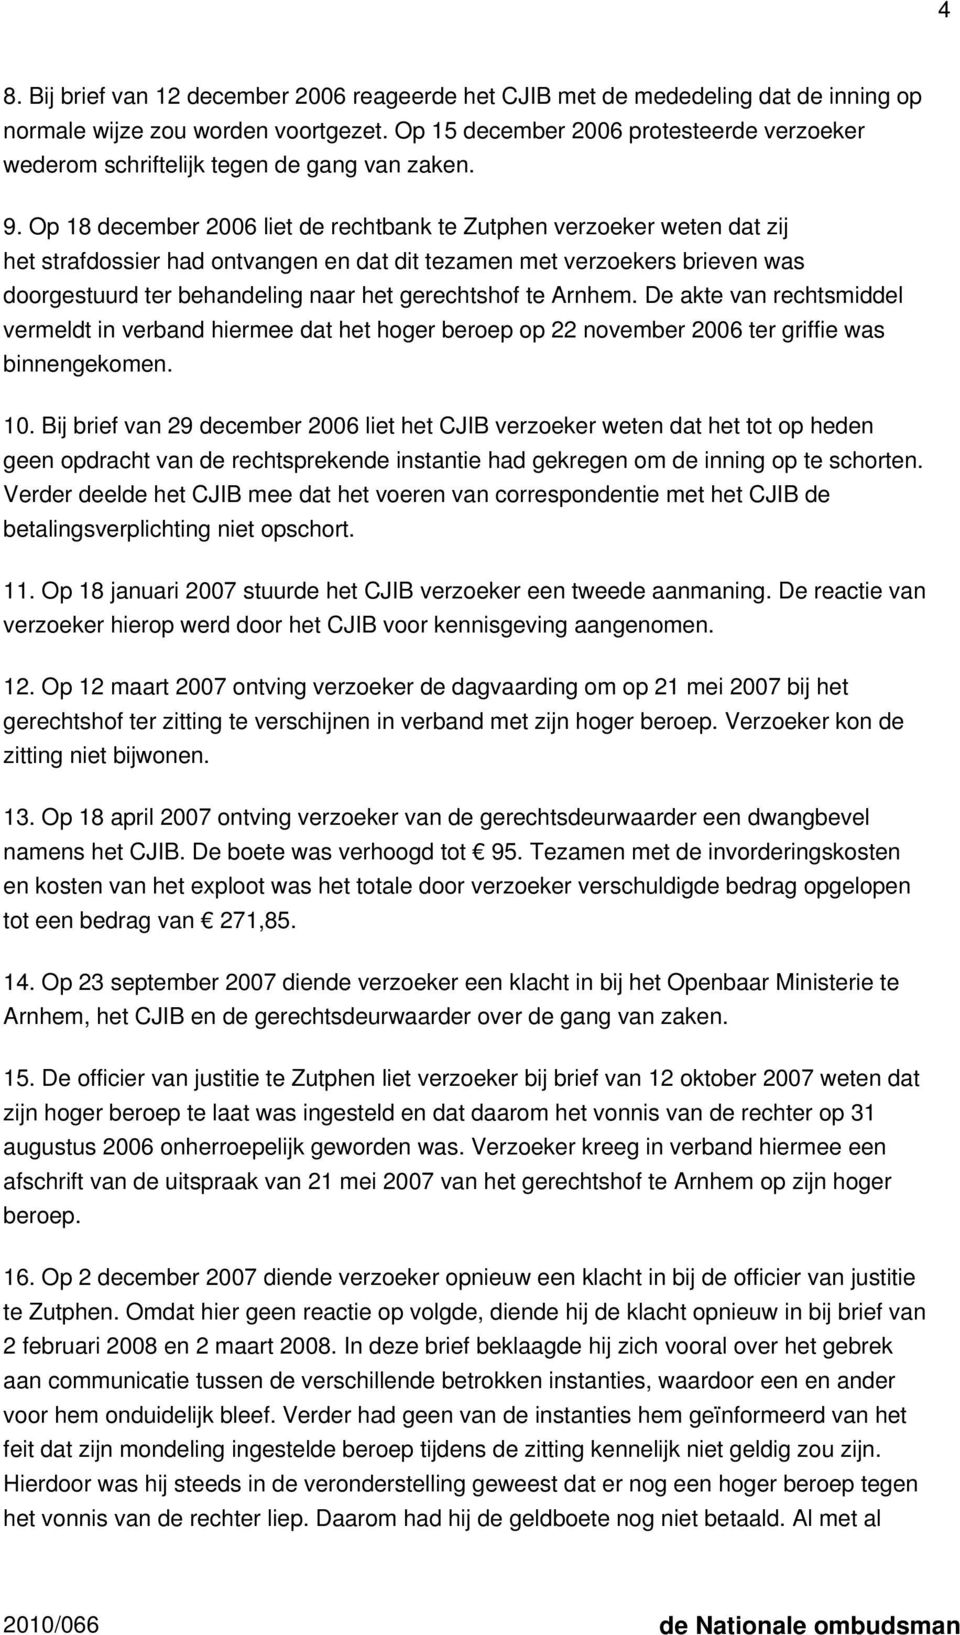 Op 18 december 2006 liet de rechtbank te Zutphen verzoeker weten dat zij het strafdossier had ontvangen en dat dit tezamen met verzoekers brieven was doorgestuurd ter behandeling naar het gerechtshof